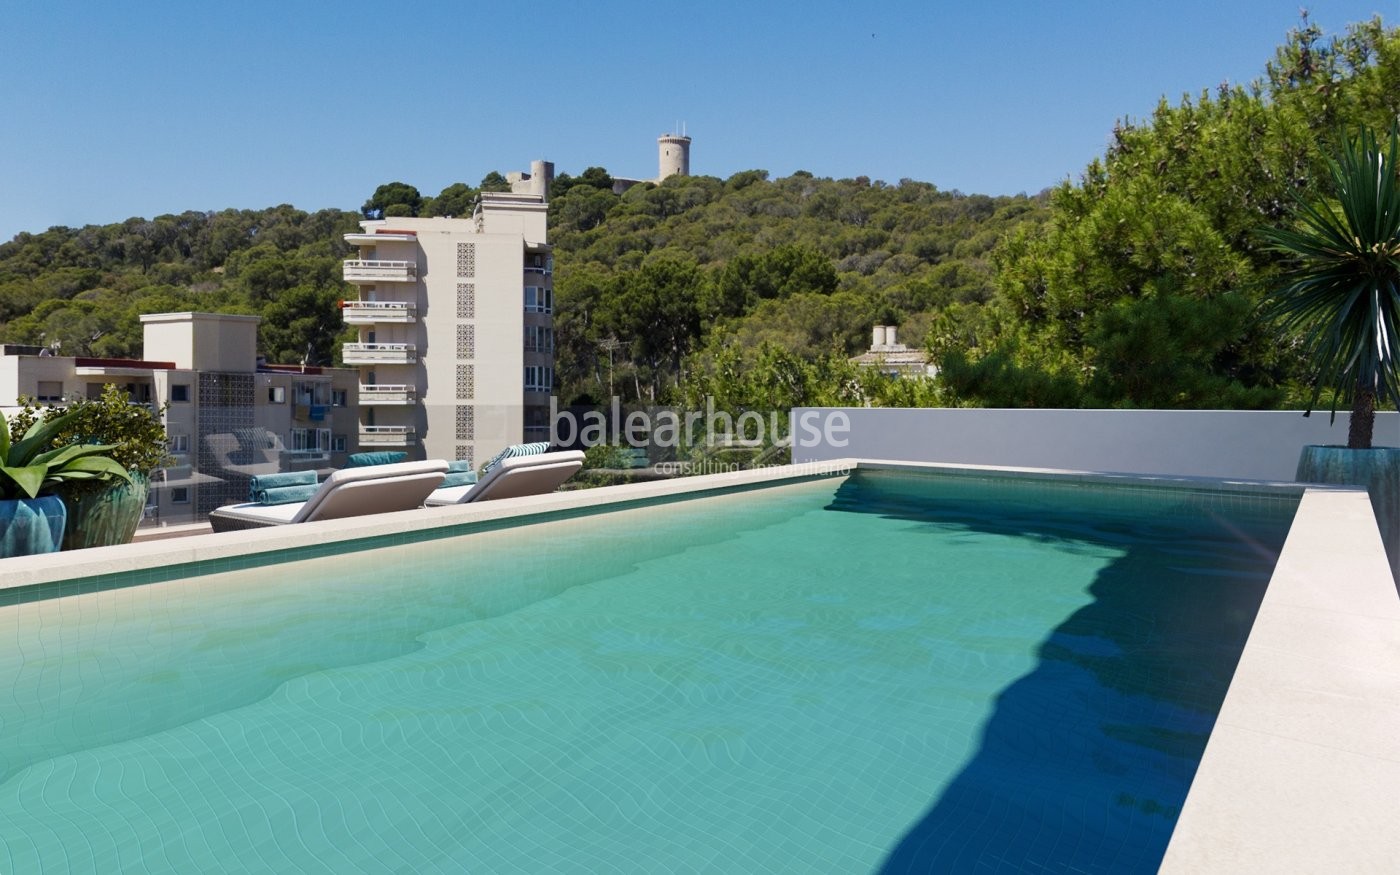 Neues modernes Wohnprojekt in Palma mit herrlichem Pool und Gartenanlage